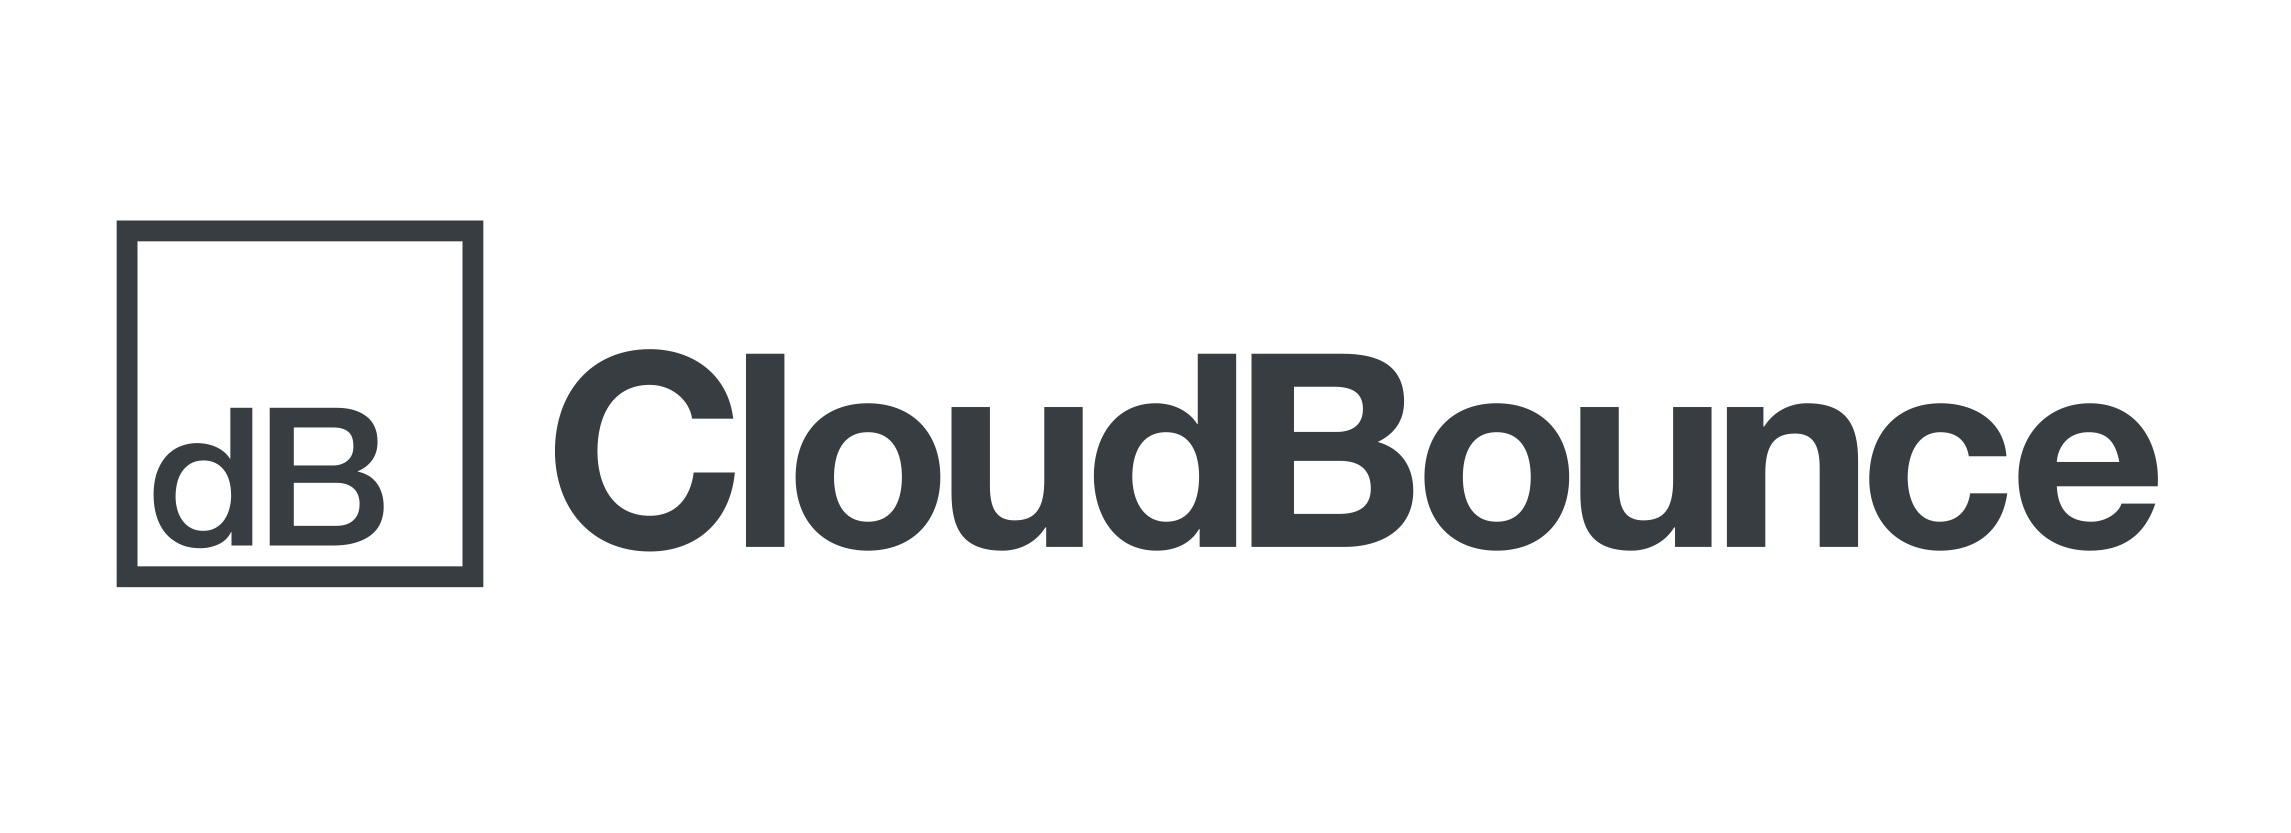 CloudBounce_logo_dark.jpg